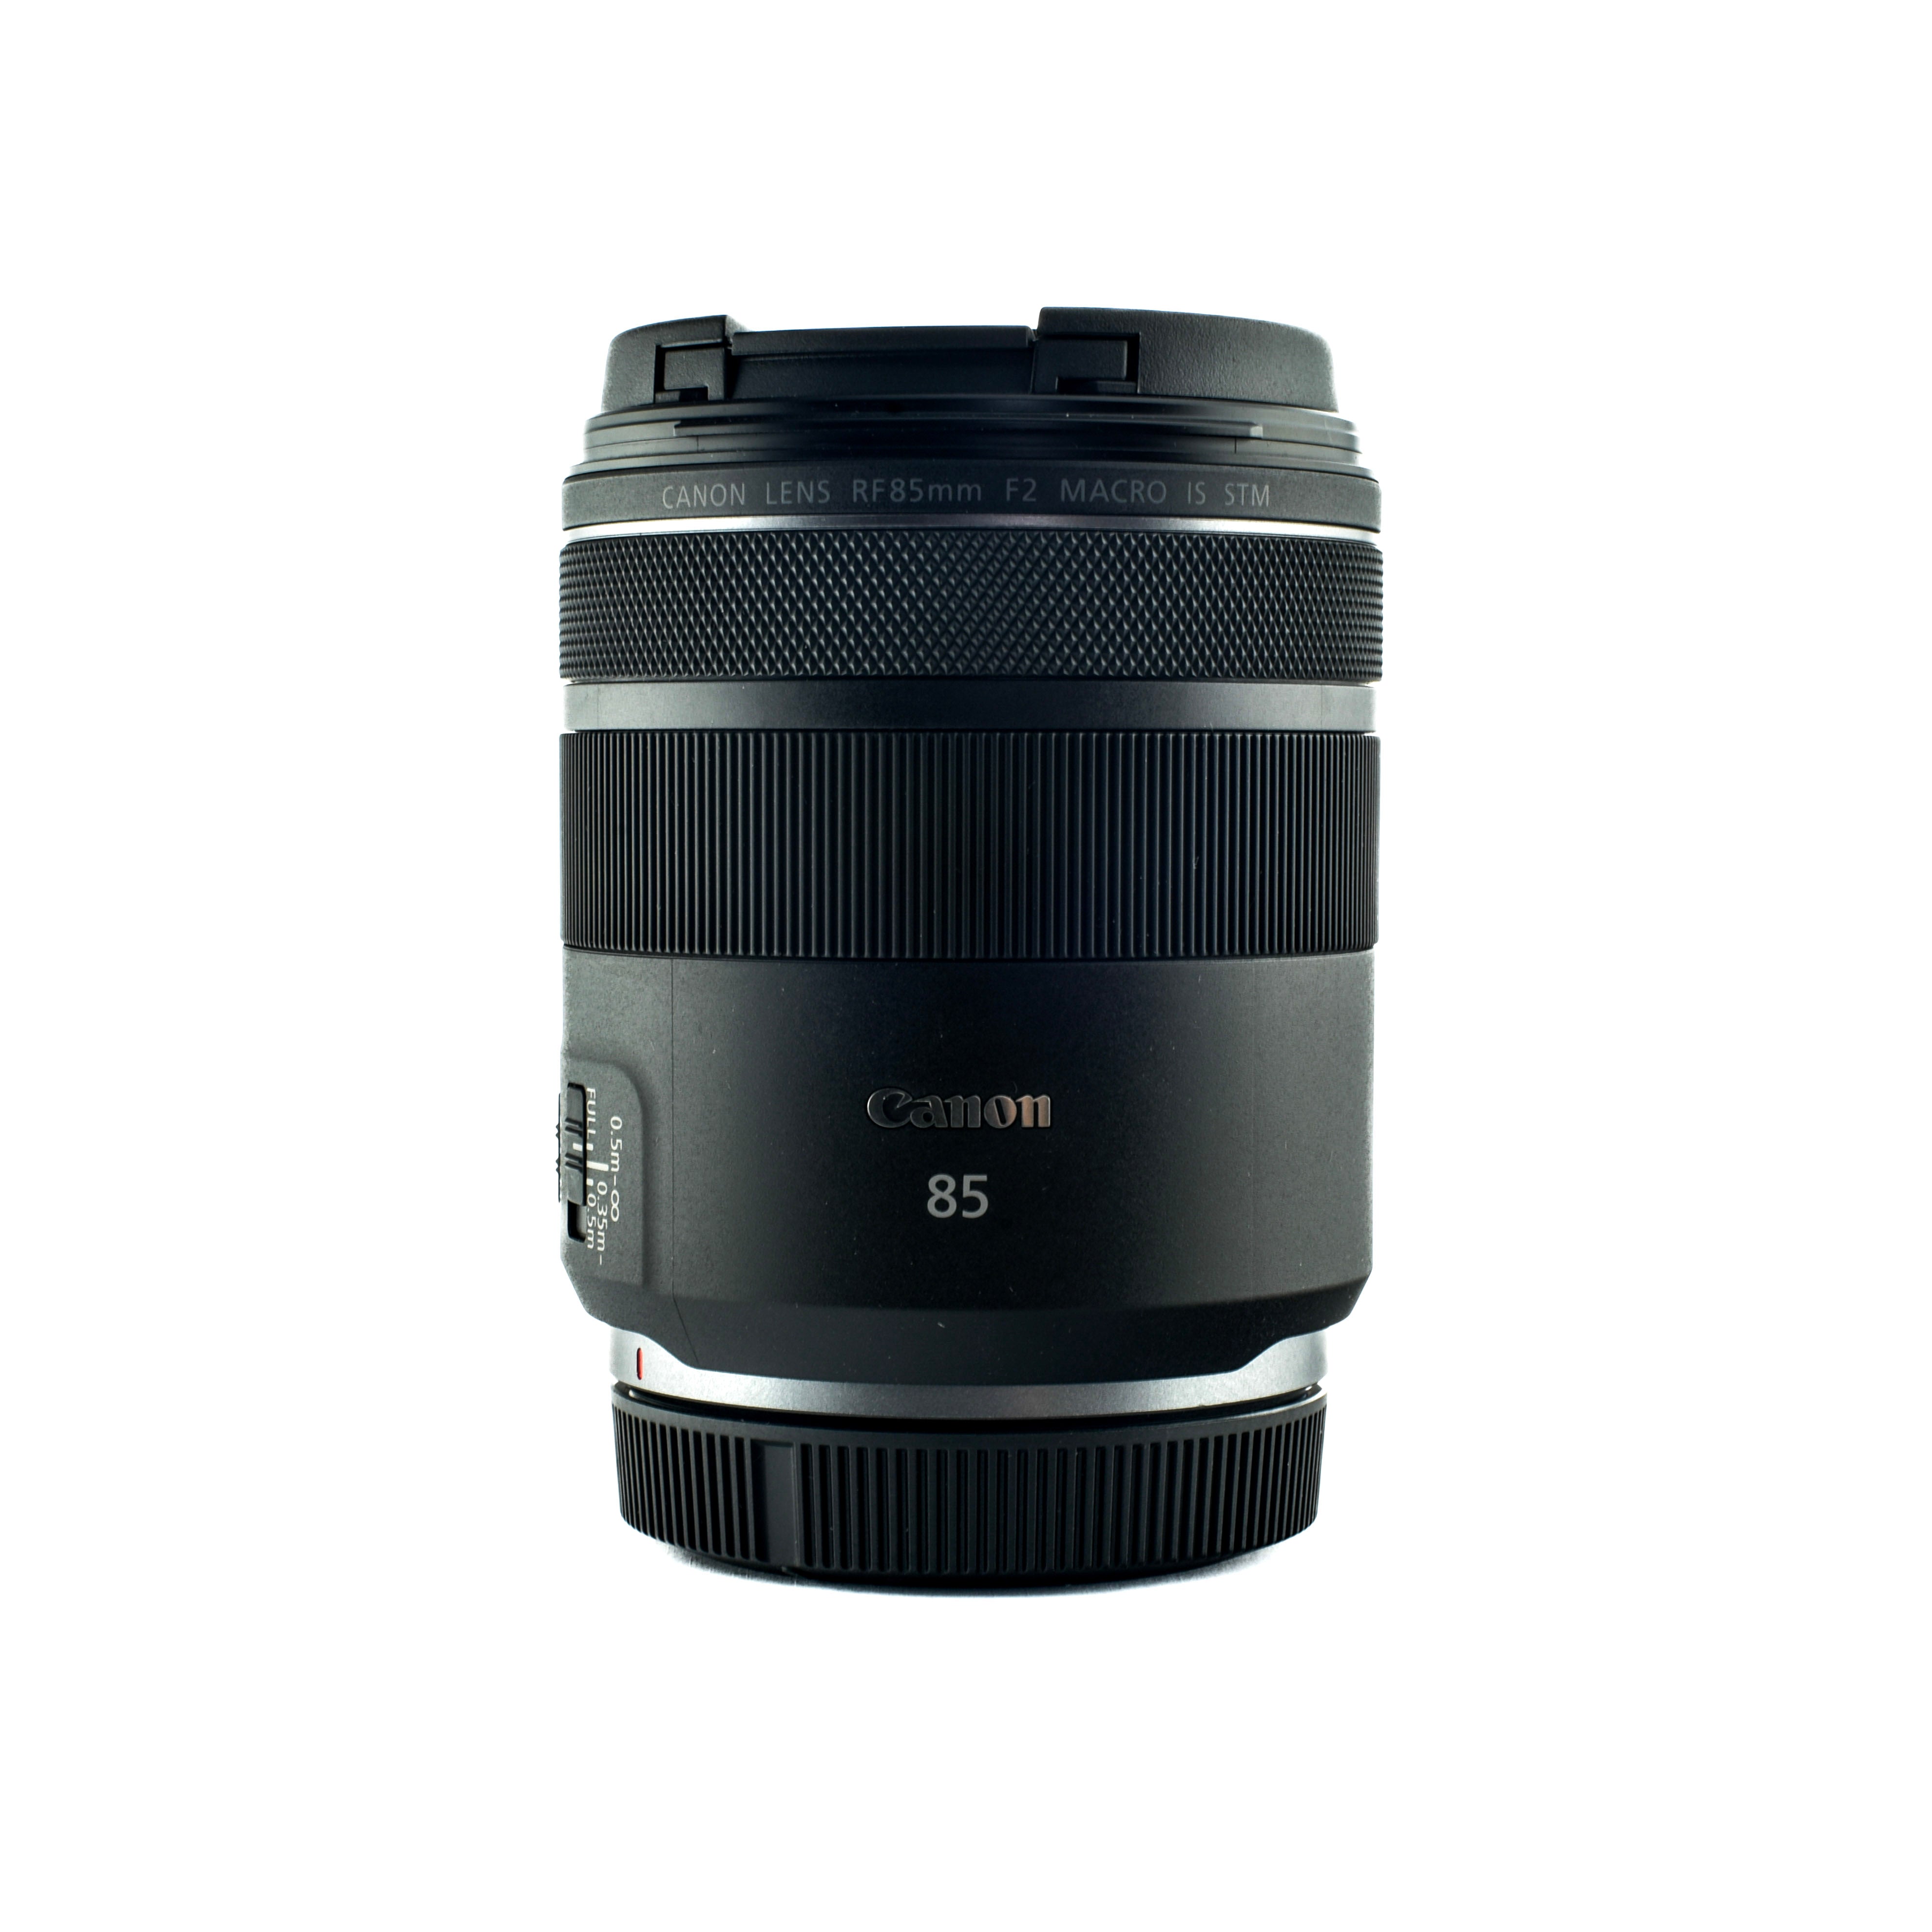 Canon RF 85mm f/2 Macro IS STM lens